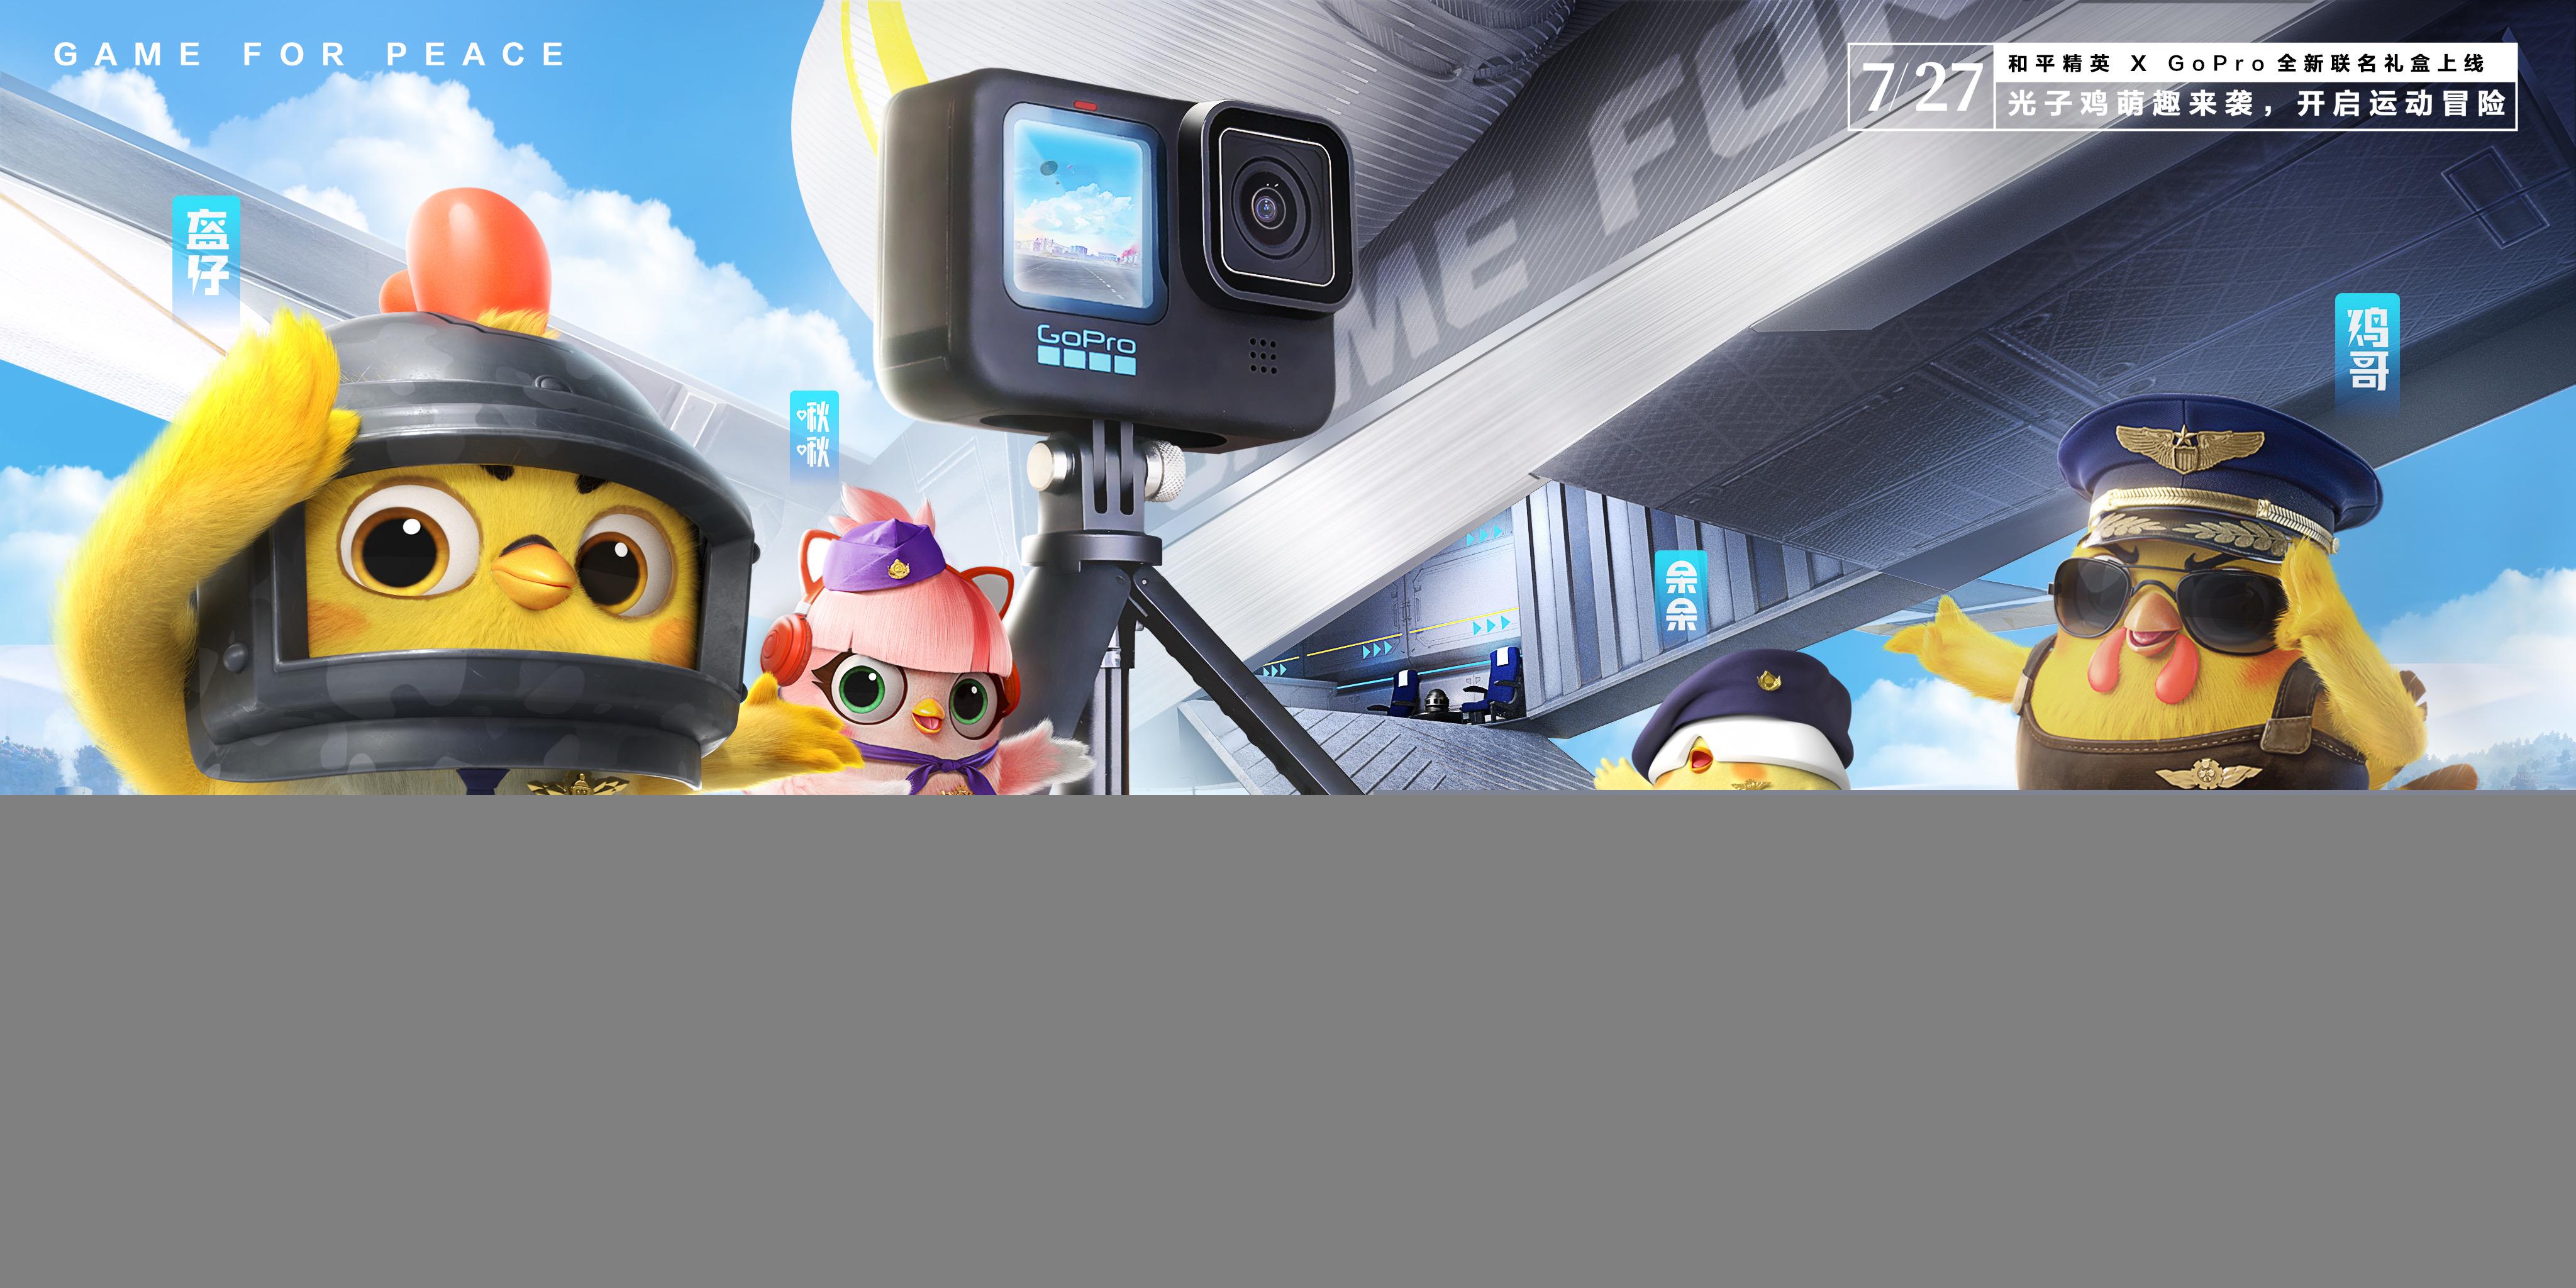 下一个圈，上天入海！光子鸡与GoPro开启运动冒险之旅